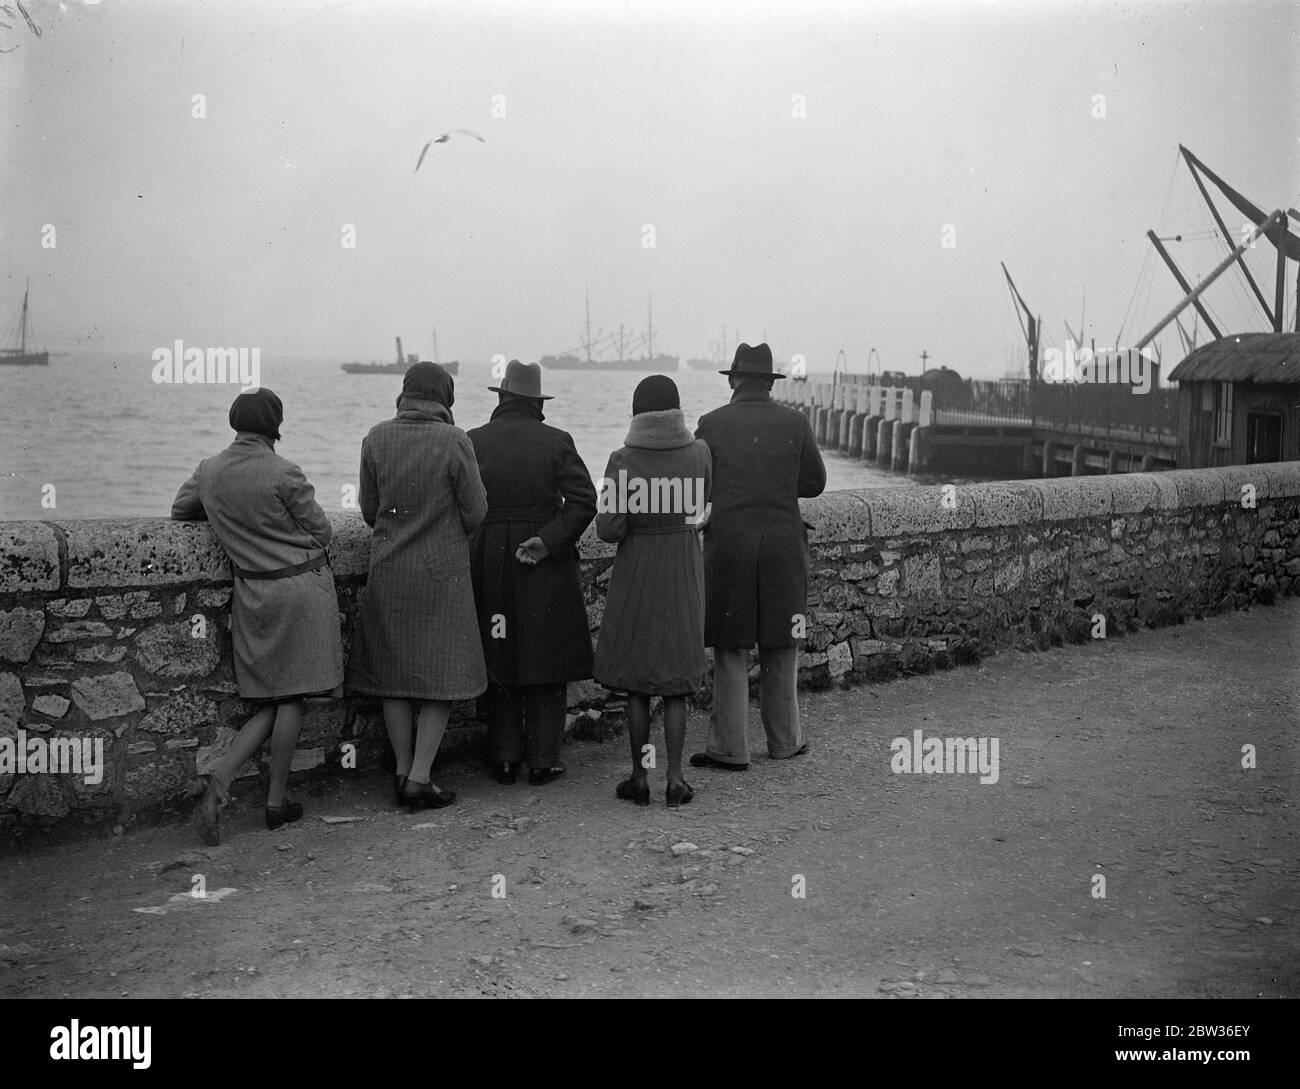 Hoffnung gegen Hoffnung in Portland. Freunde und Verwandte warten vergeblich auf Nachricht von vermissten U-Boot-Besatzung. Freunde von Männern in der U-Boot-M2 verschwanden in Lyme Bay, Dorset, Großbritannien, am 26. Januar , Warten auf den Hafen für die neuesten Nachrichten über das fehlende U-Boot , die nicht kommen . 28. Januar 1932 Stockfoto